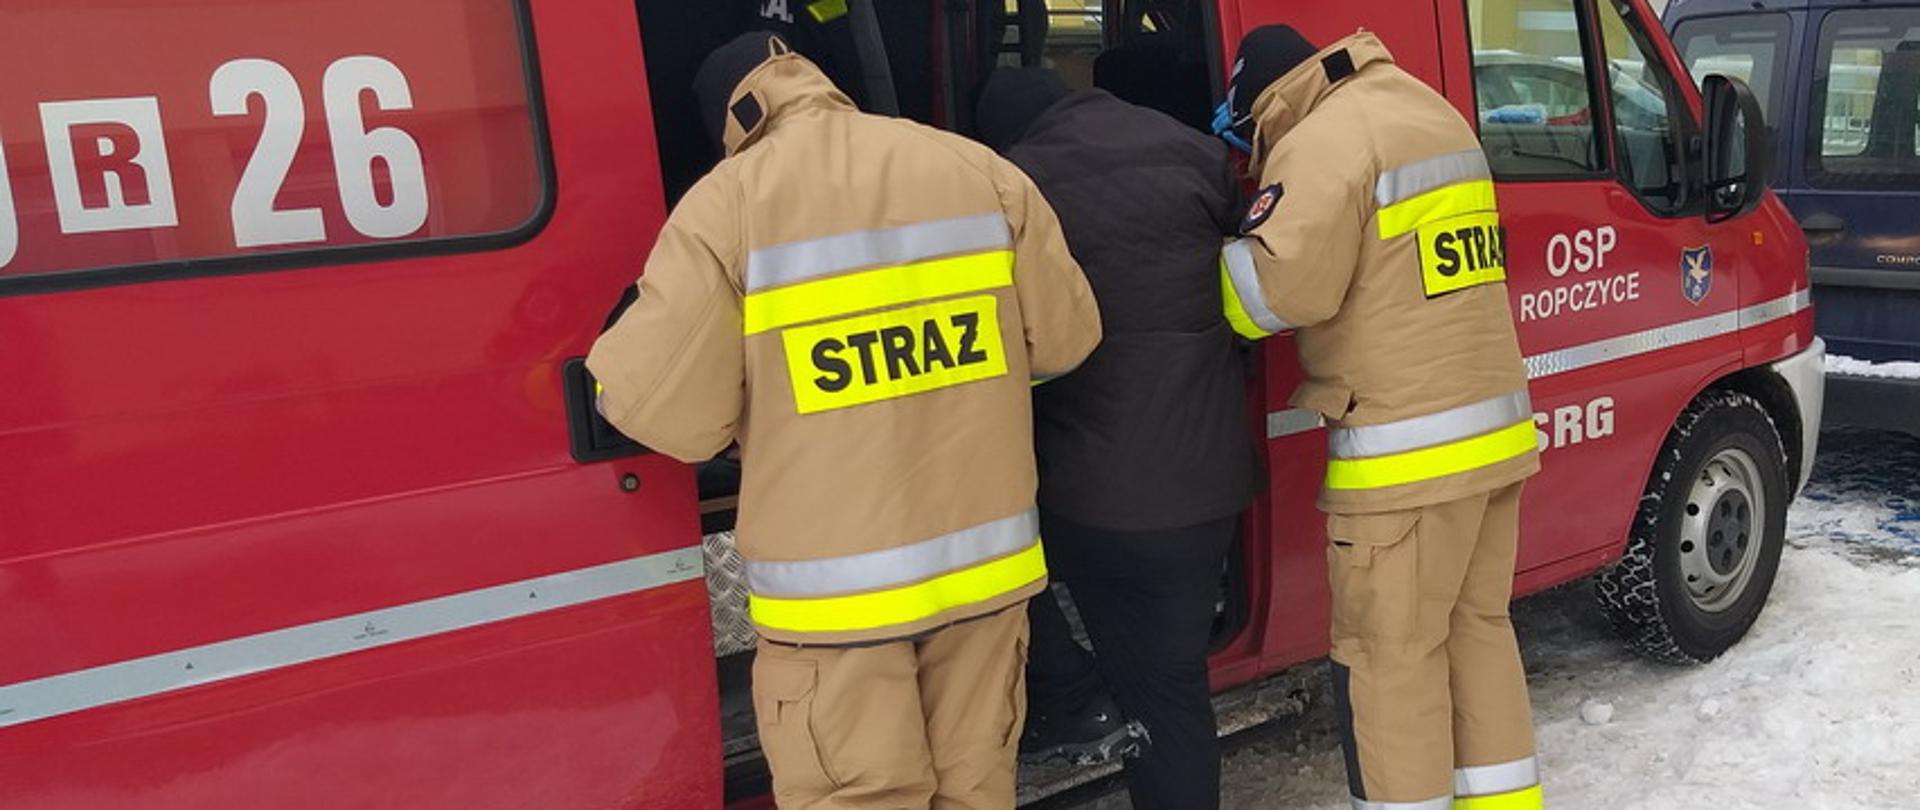 Dwaj strażacy w umundurowaniu bojowym pomagają starszemu mężczyźnie w czarnym płaszczu wsiąść do czerwonego samochodu pożarniczego, trzymając go pod ręce. Mężczyzna jedną nogą stoi na progu samochód typu bus z napisem na przednich drzwiach OSP Ropczyce. Samochód stoi na zaśnieżonym parkingu.